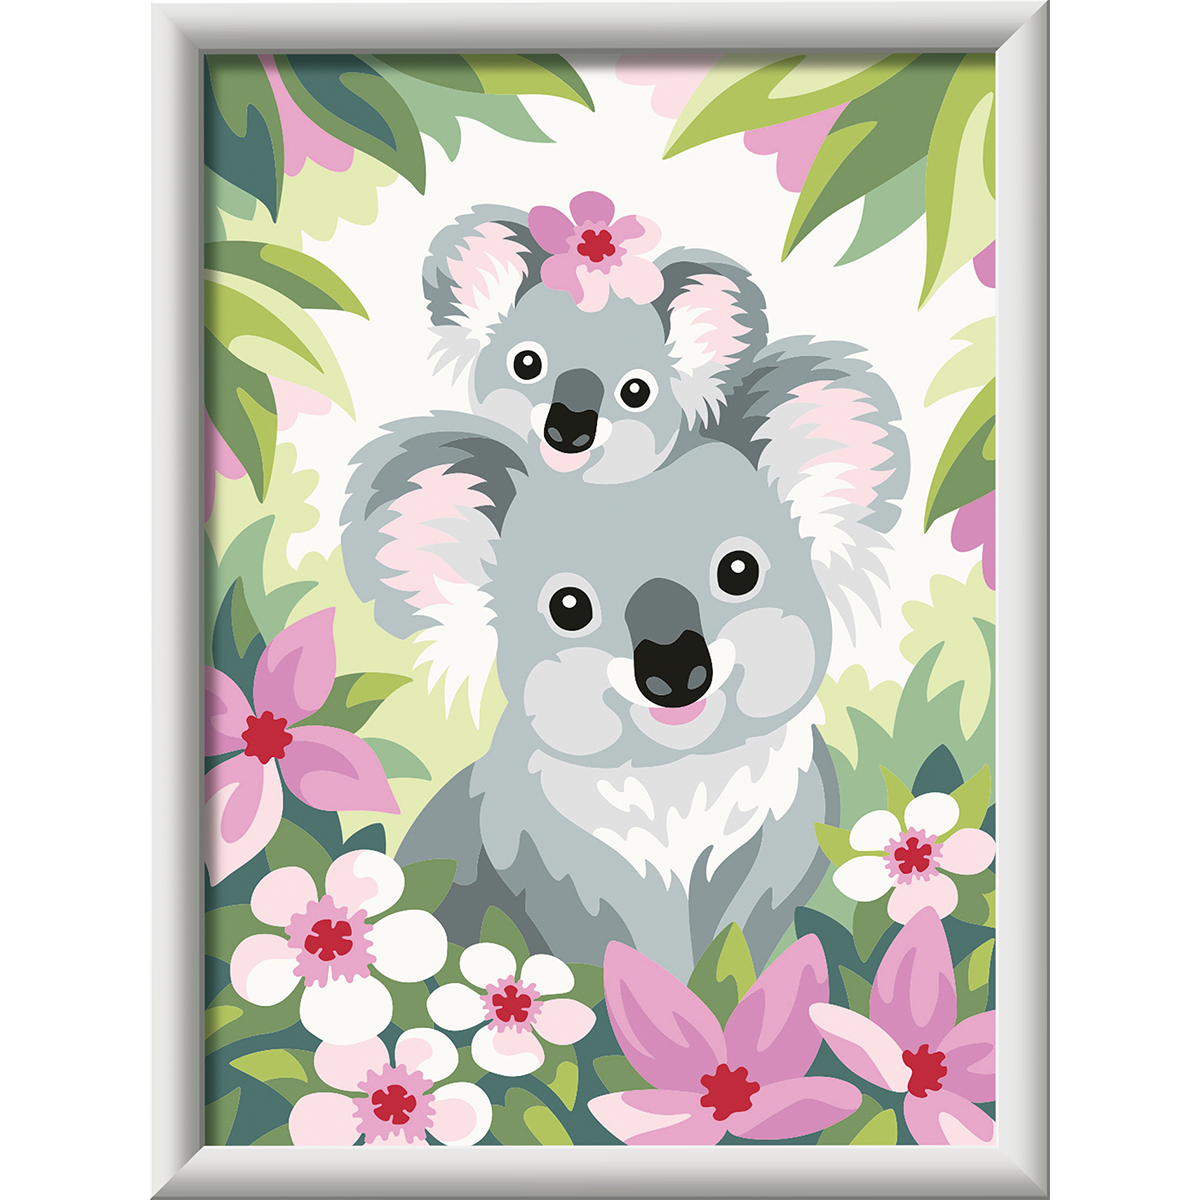 Ravensburger creart per bambini, kit per dipingere con i numeri, 9+, serie d, sweet koala - CREART